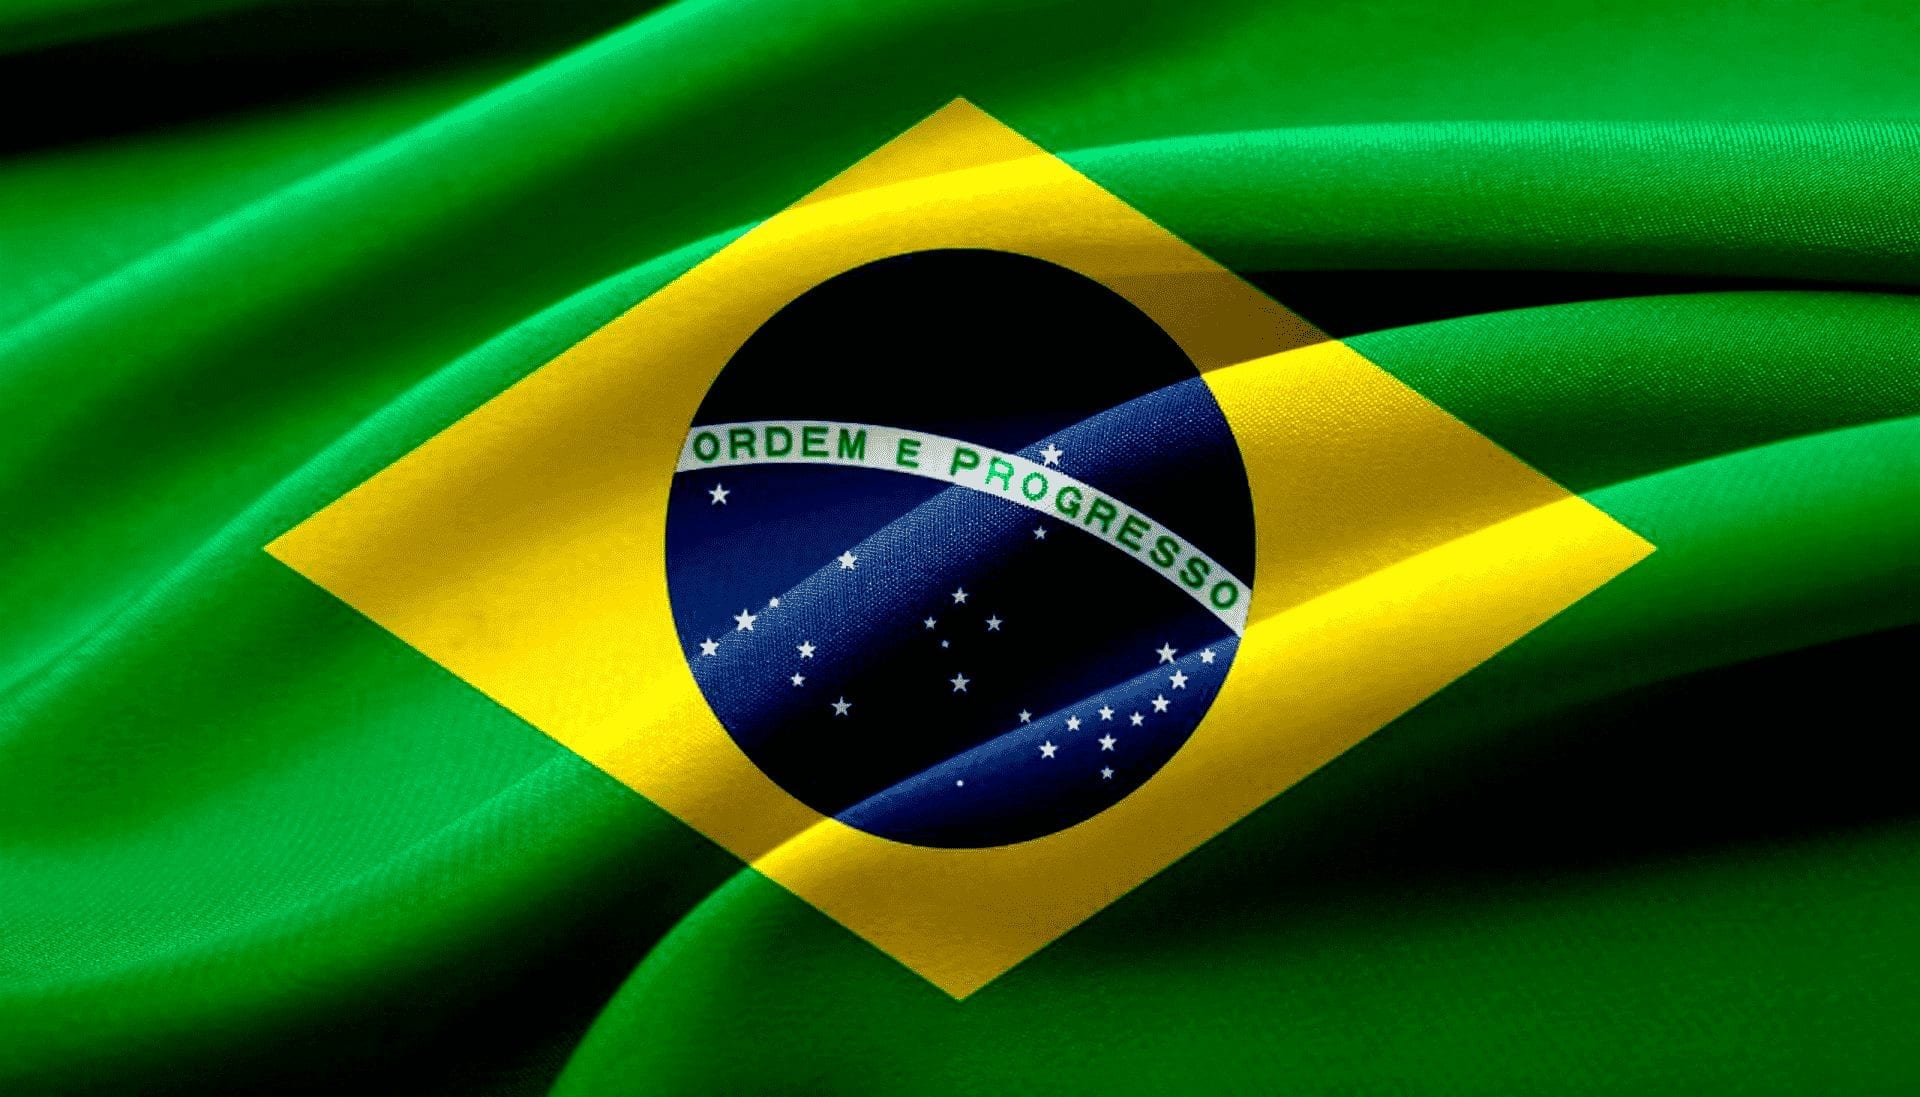 De vraag naar Bitcoin in Brazilië kan sterk toenemen